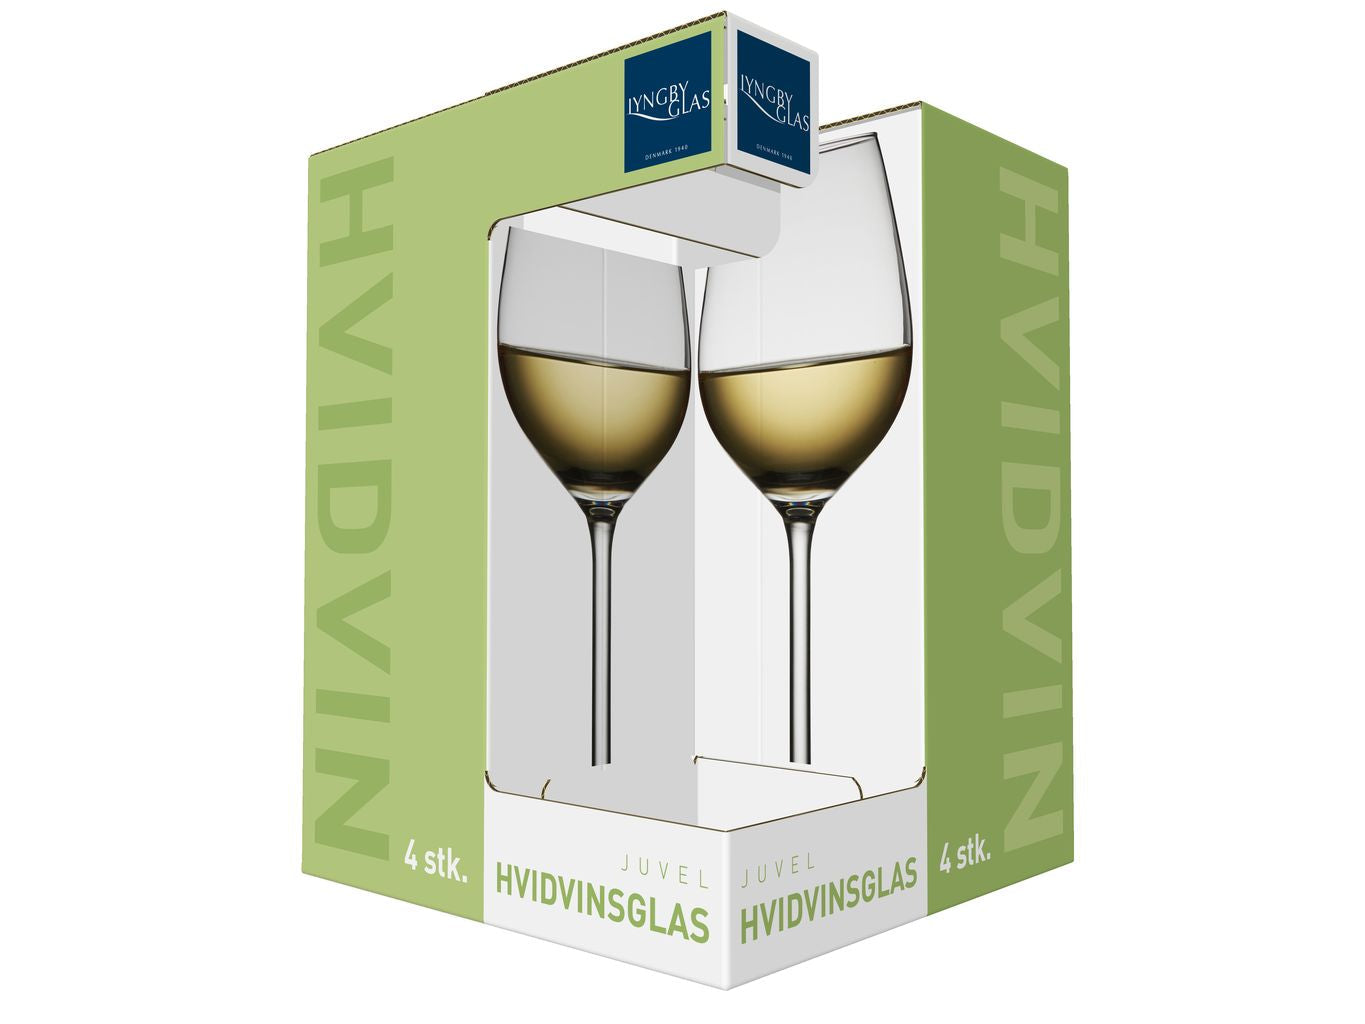 Lyngby Glas Juvel Weißweinglas 38 Cl, 4 Stcs.